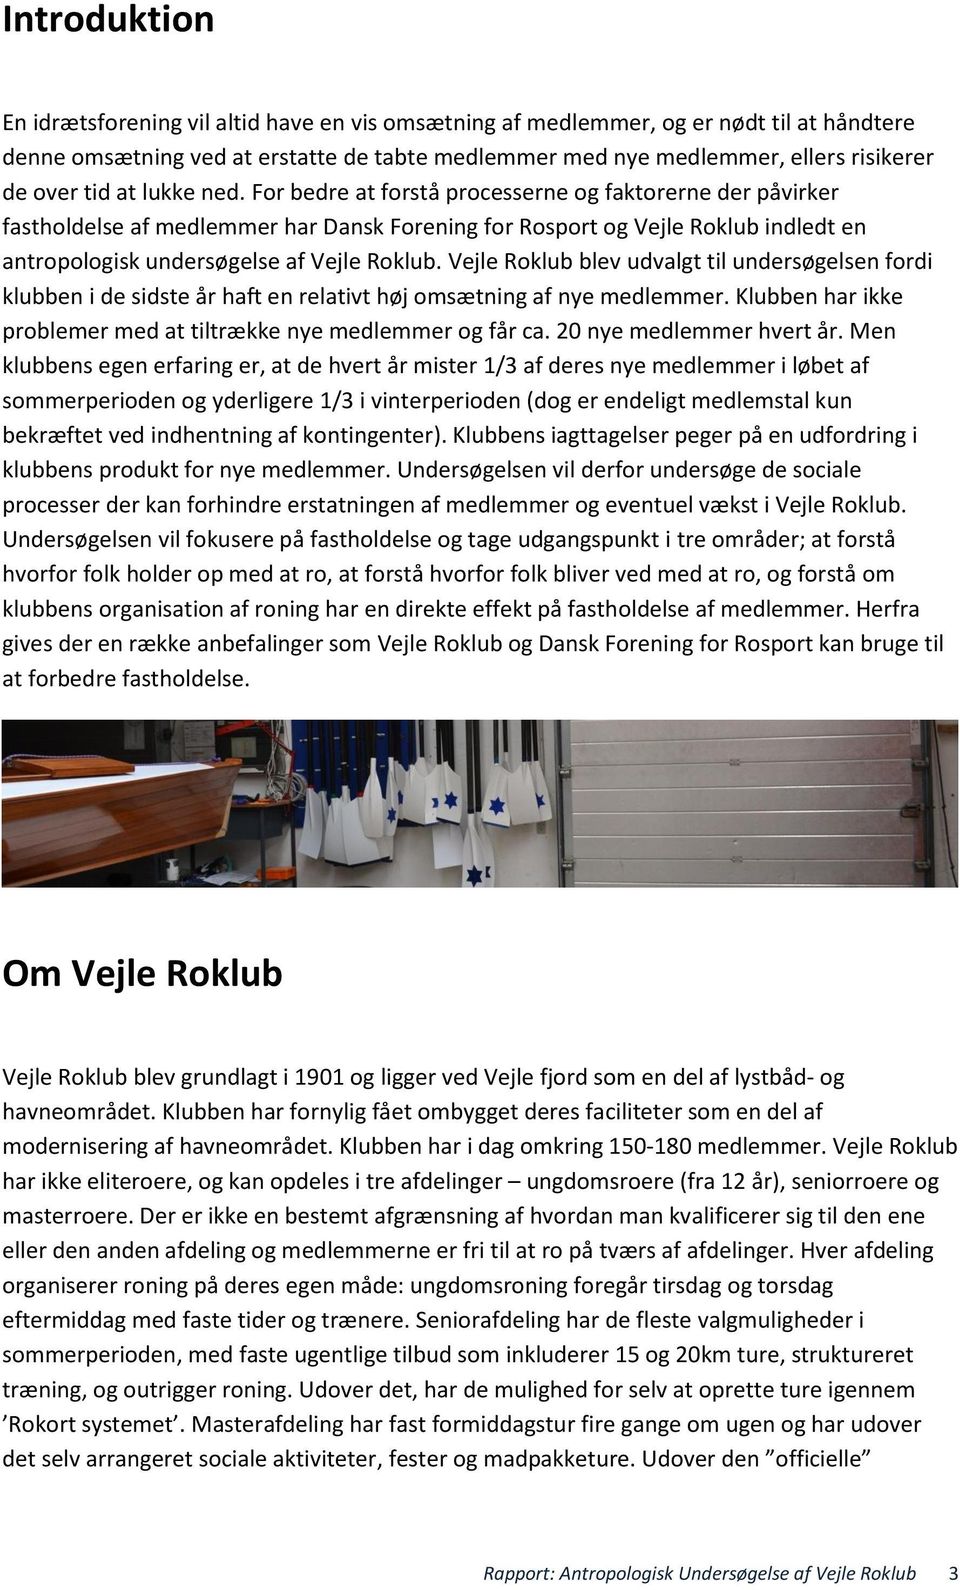 For bedre at forstå processerne og faktorerne der påvirker fastholdelse af medlemmer har Dansk Forening for Rosport og Vejle Roklub indledt en antropologisk undersøgelse af Vejle Roklub.